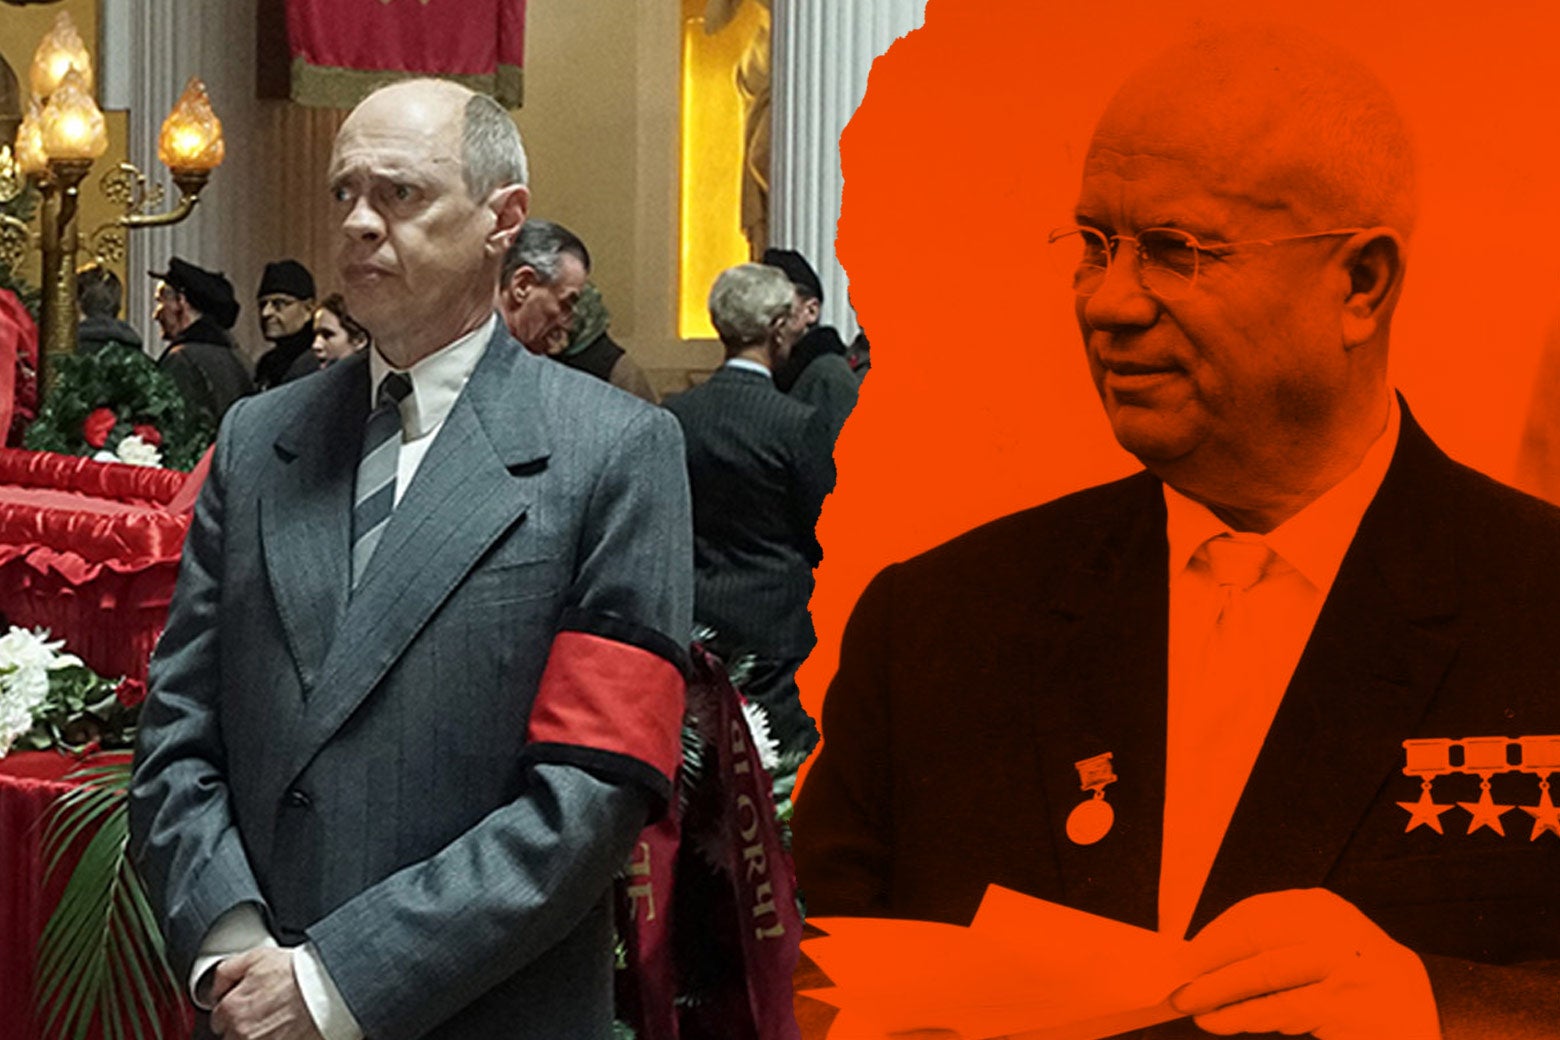 At left: Steve Buscemi as Nikita Khrushchev in the film. At right: the real Nikita Khrushchev.